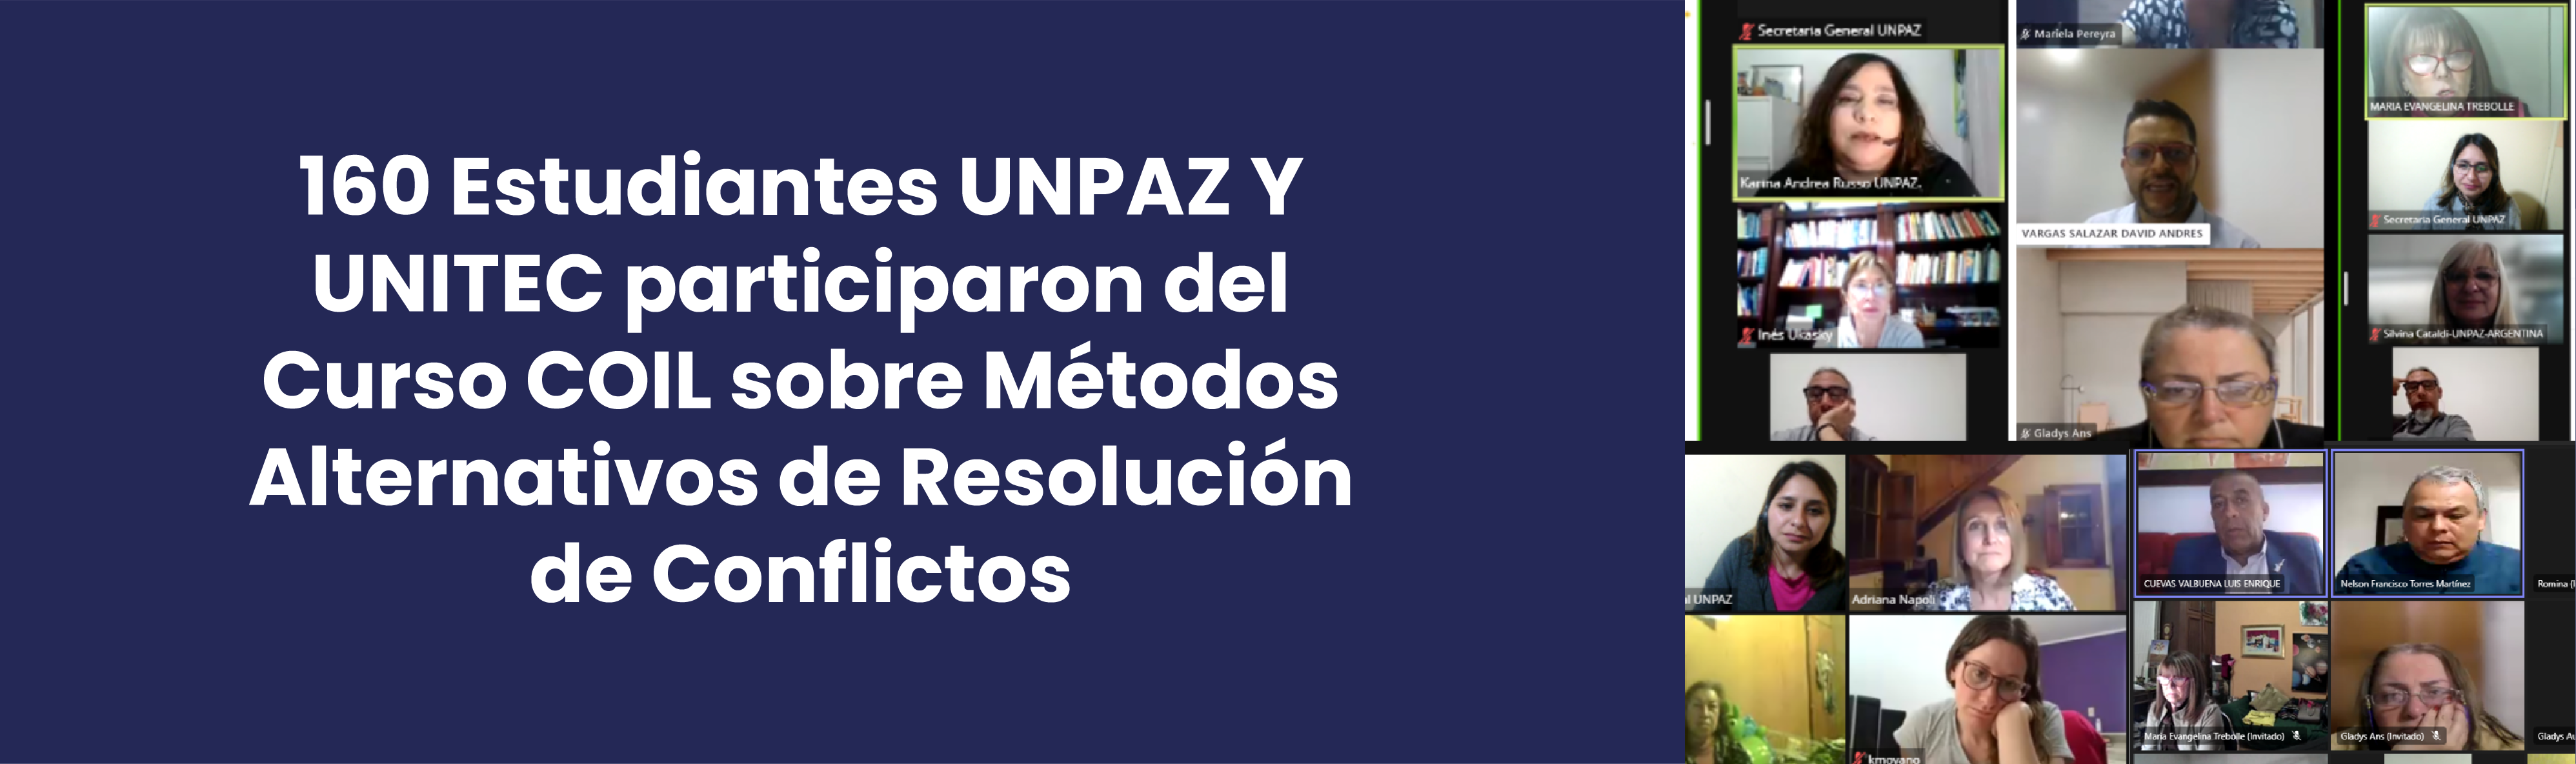 160 ESTUDIANTES UNPAZ Y UNITEC PARTICIPARON DEL CURSO COIL SOBRE MÉTODOS ALTERNATIVOS DE RESOLUCIÓN DE CONFLICTOS